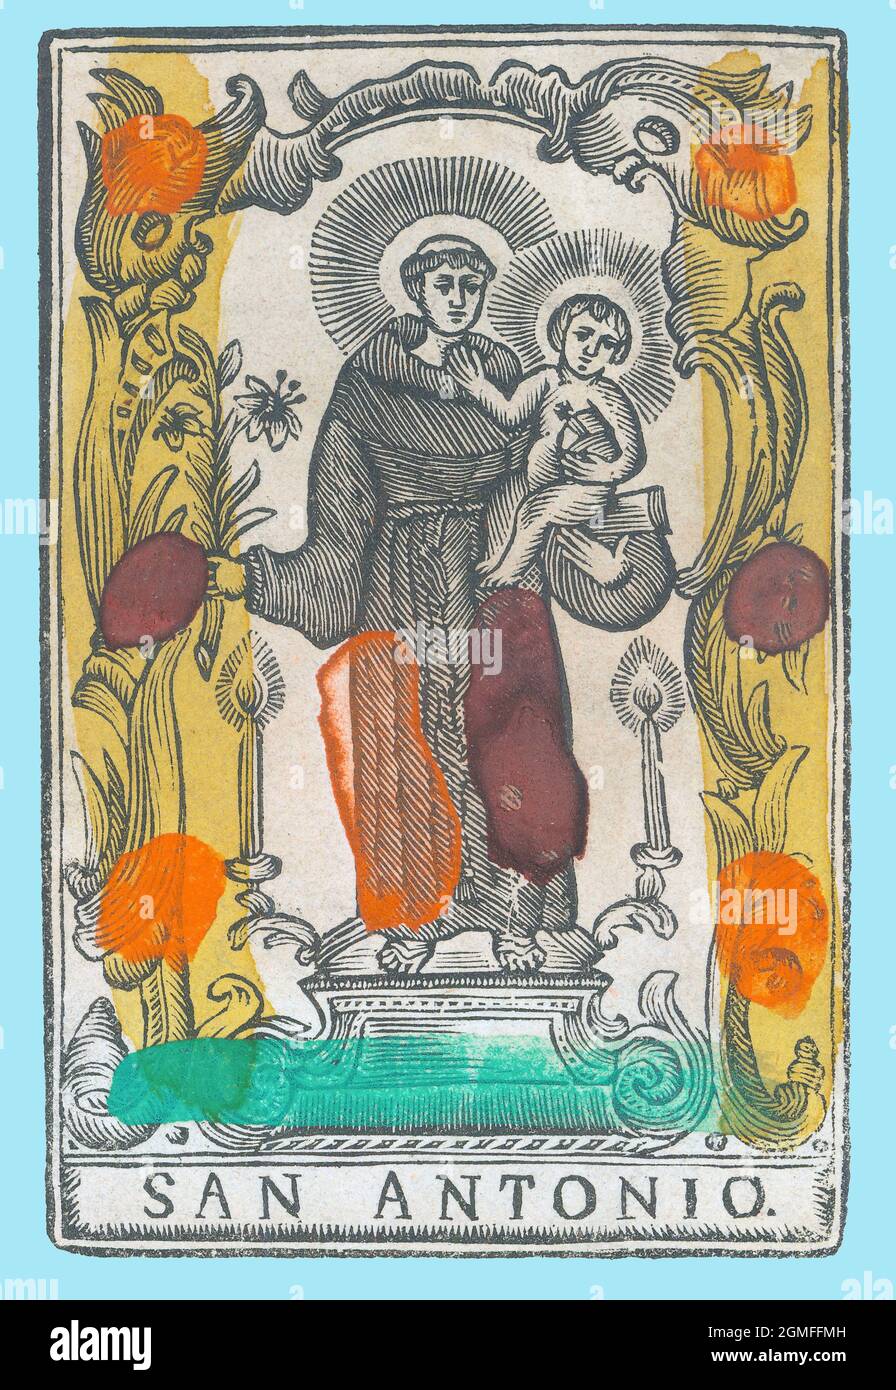 San Antonio de Padua (1195-1231), fraile franciscano. Estampería popular del siglo XVIII, pintado a mano. Stock Photo